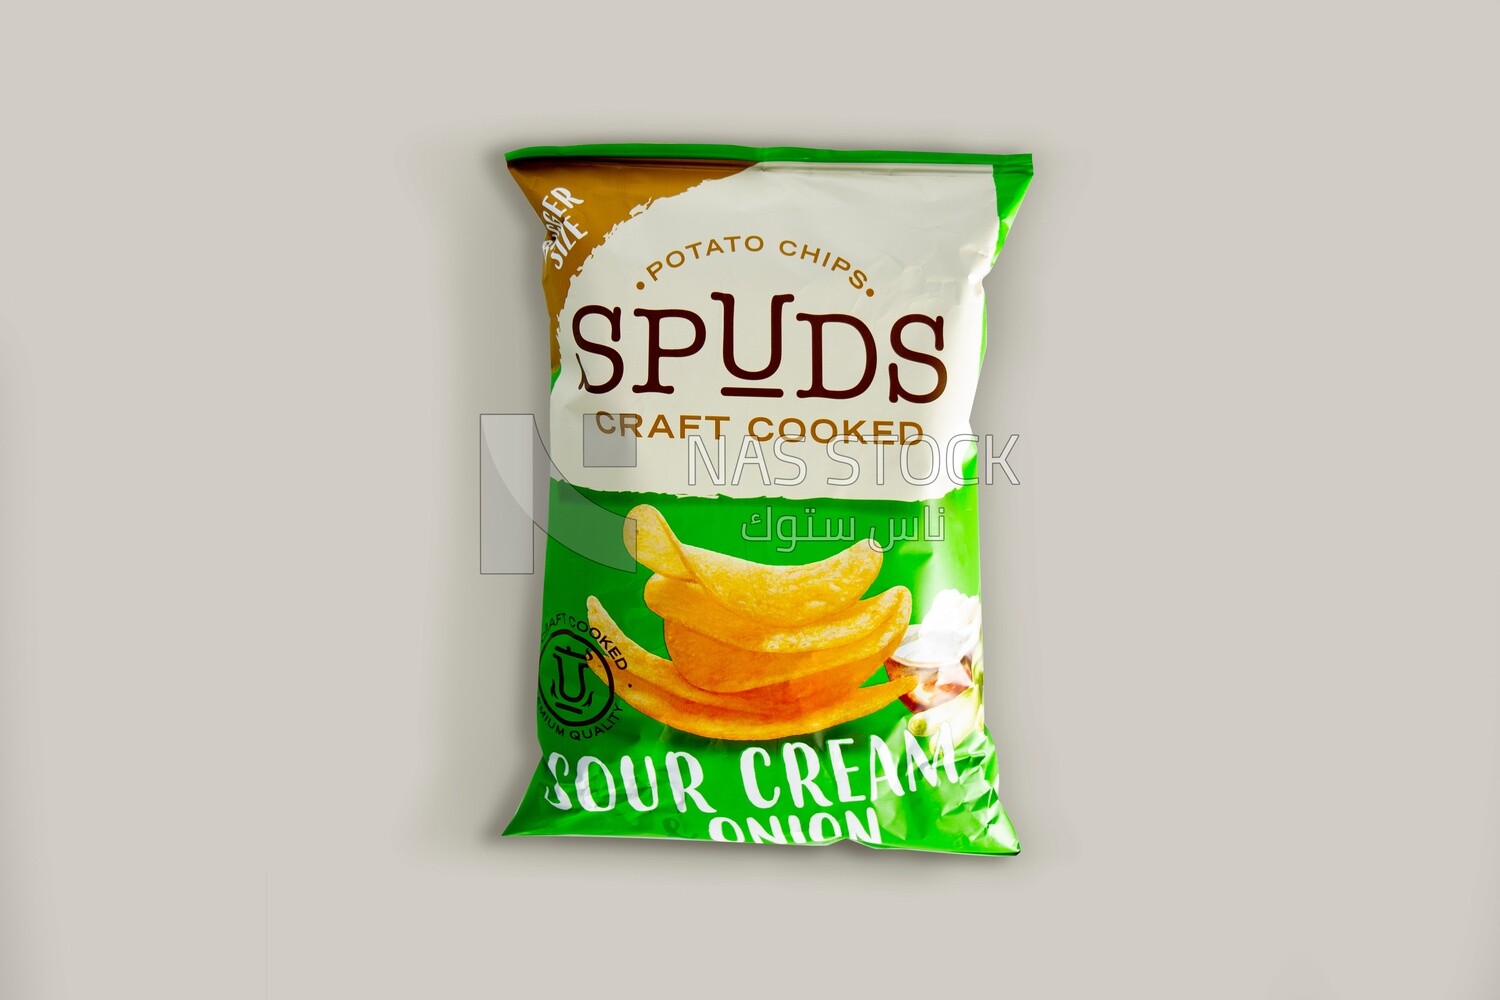 Spuds potato chips